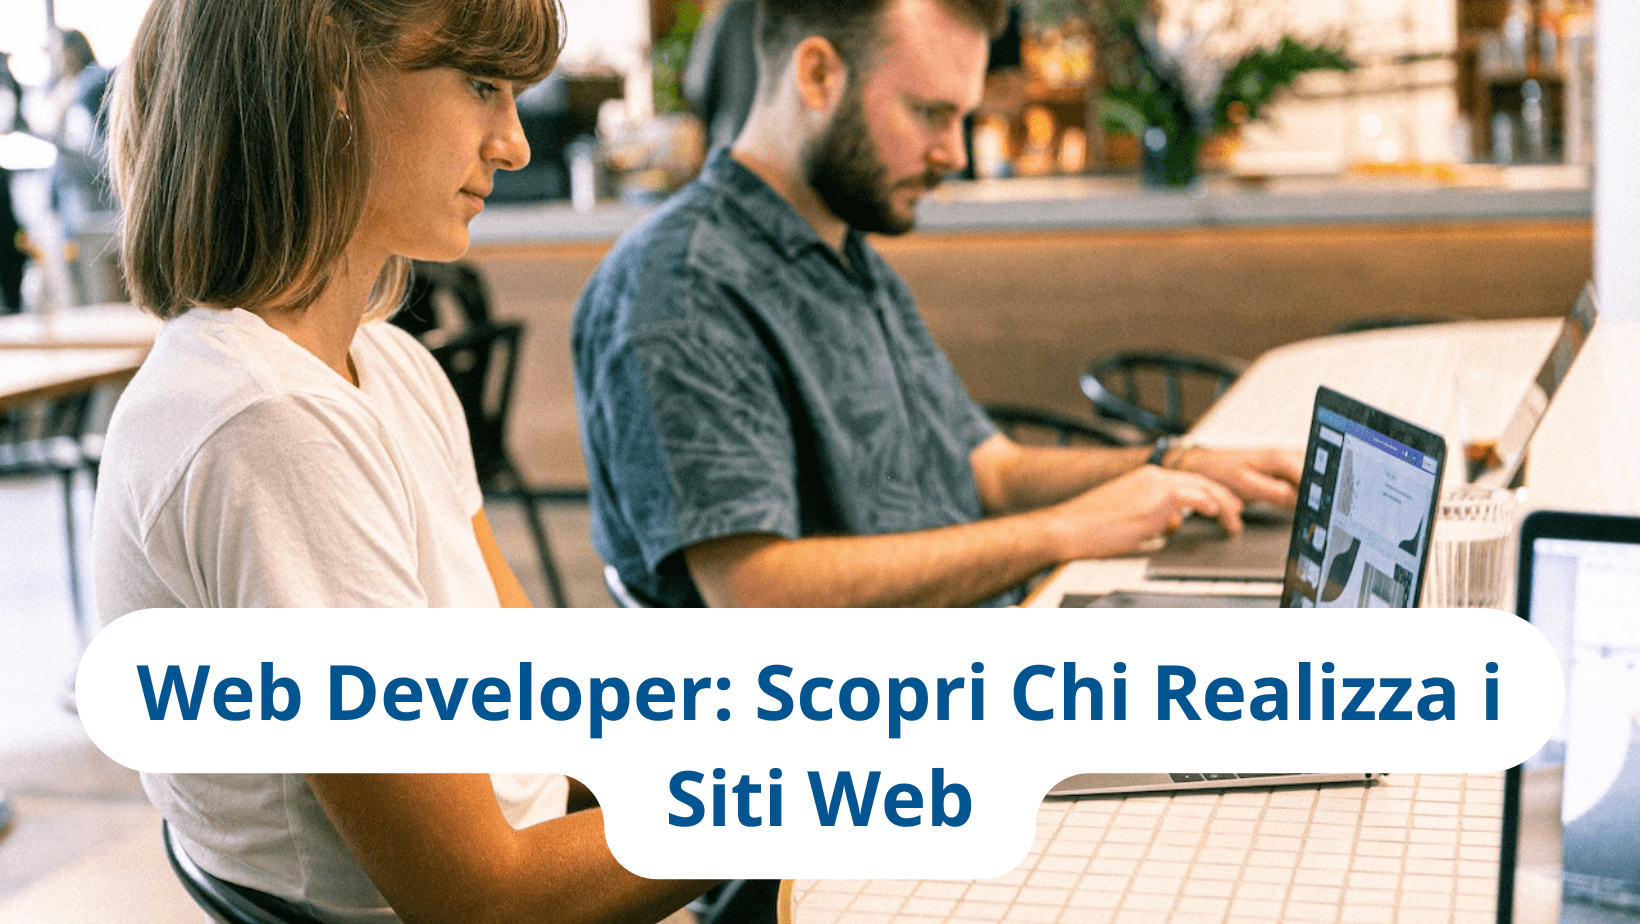 Web Developer Scopri Chi Realizza Siti Web